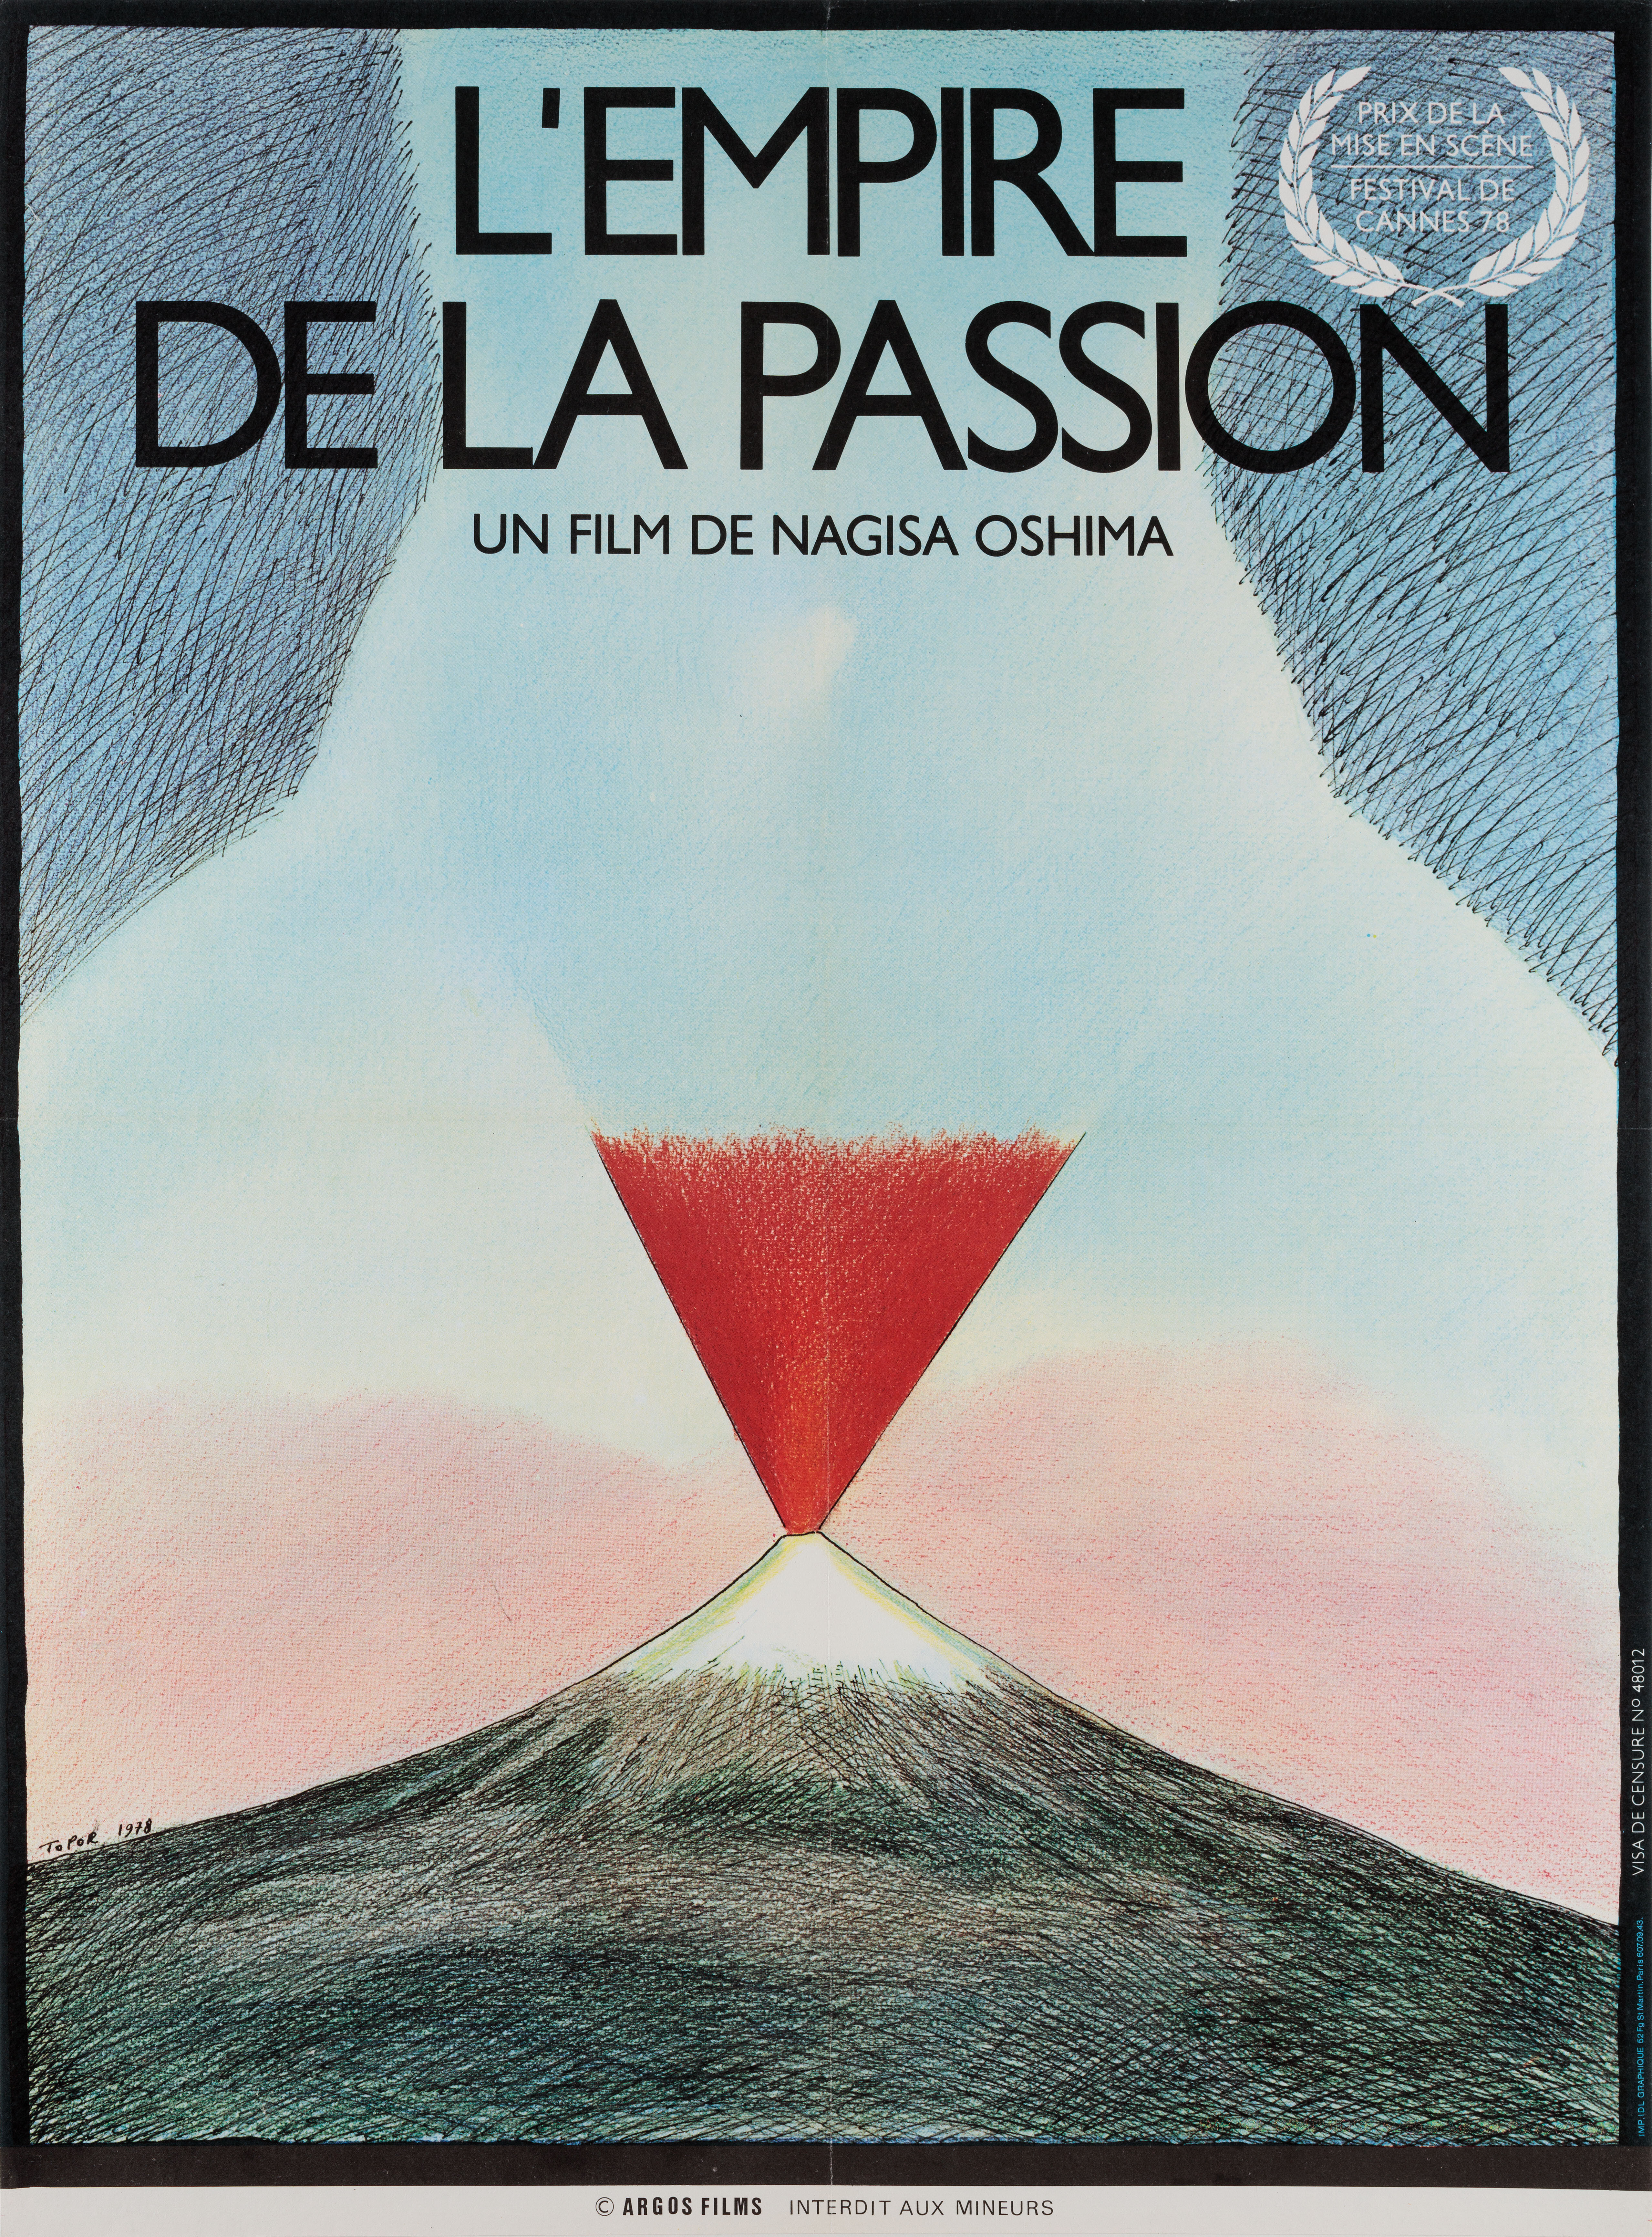 Империя страсти (Empire of Passion, 1978), режиссёр Нагиса Осима, французский постер к фильму, автор Роланд Топор (ужасы, 1978)